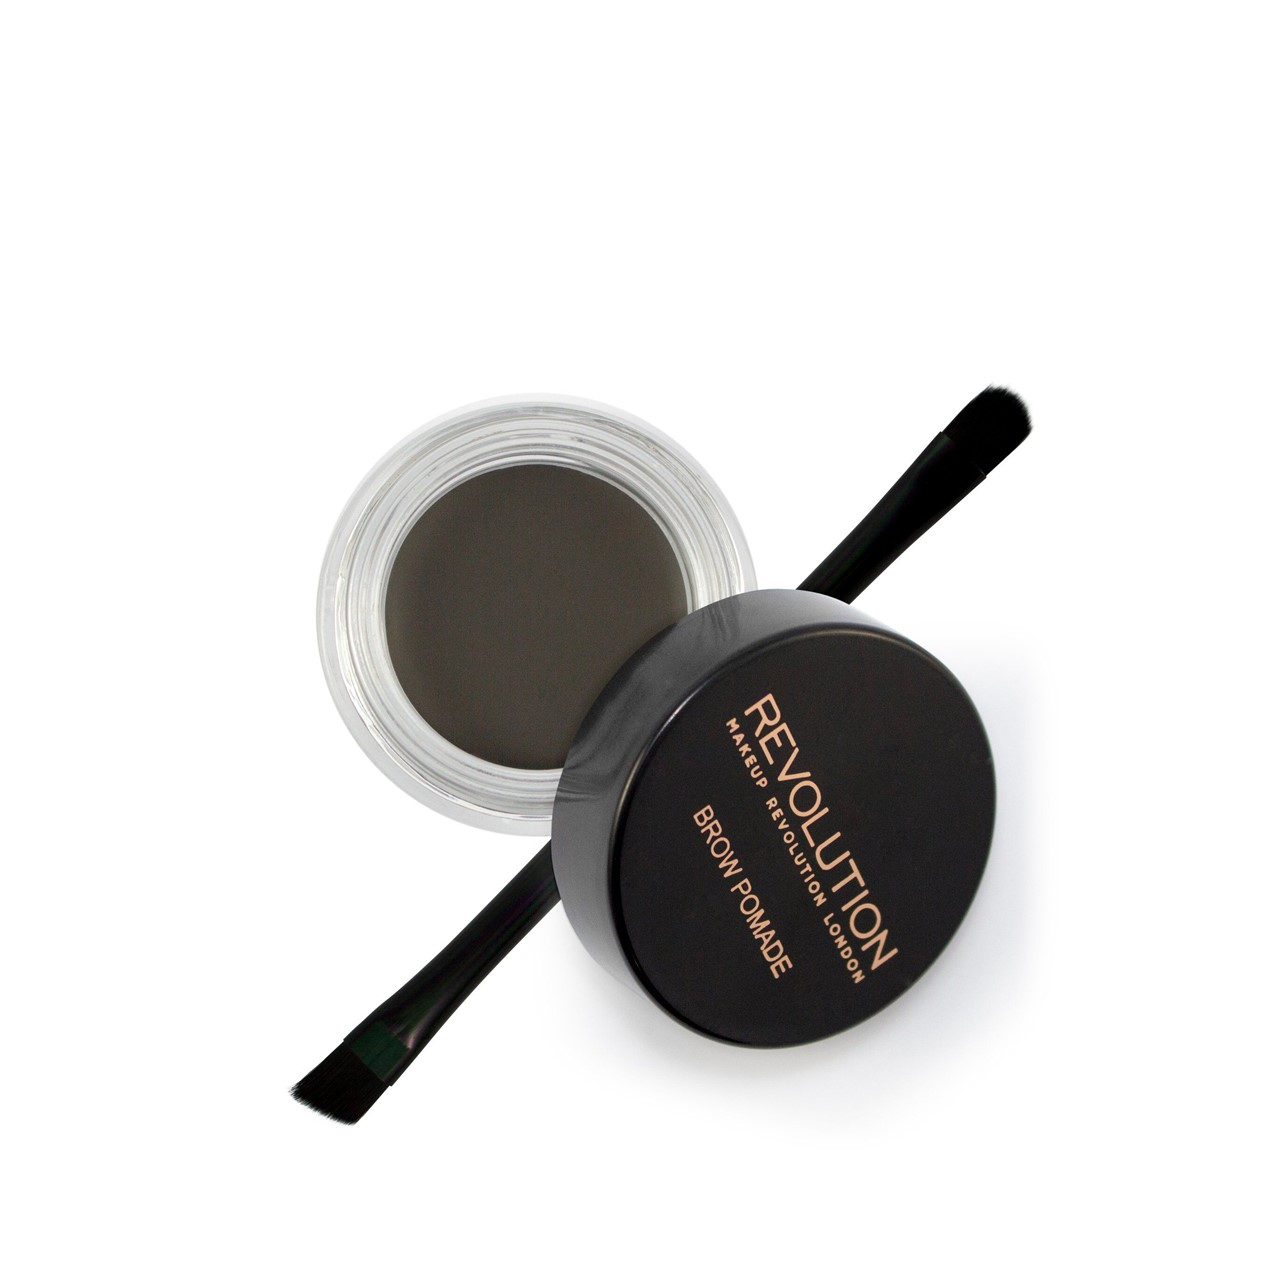 Makeup Revolution Brow Pomade Graphite 2.5g (0.09oz)